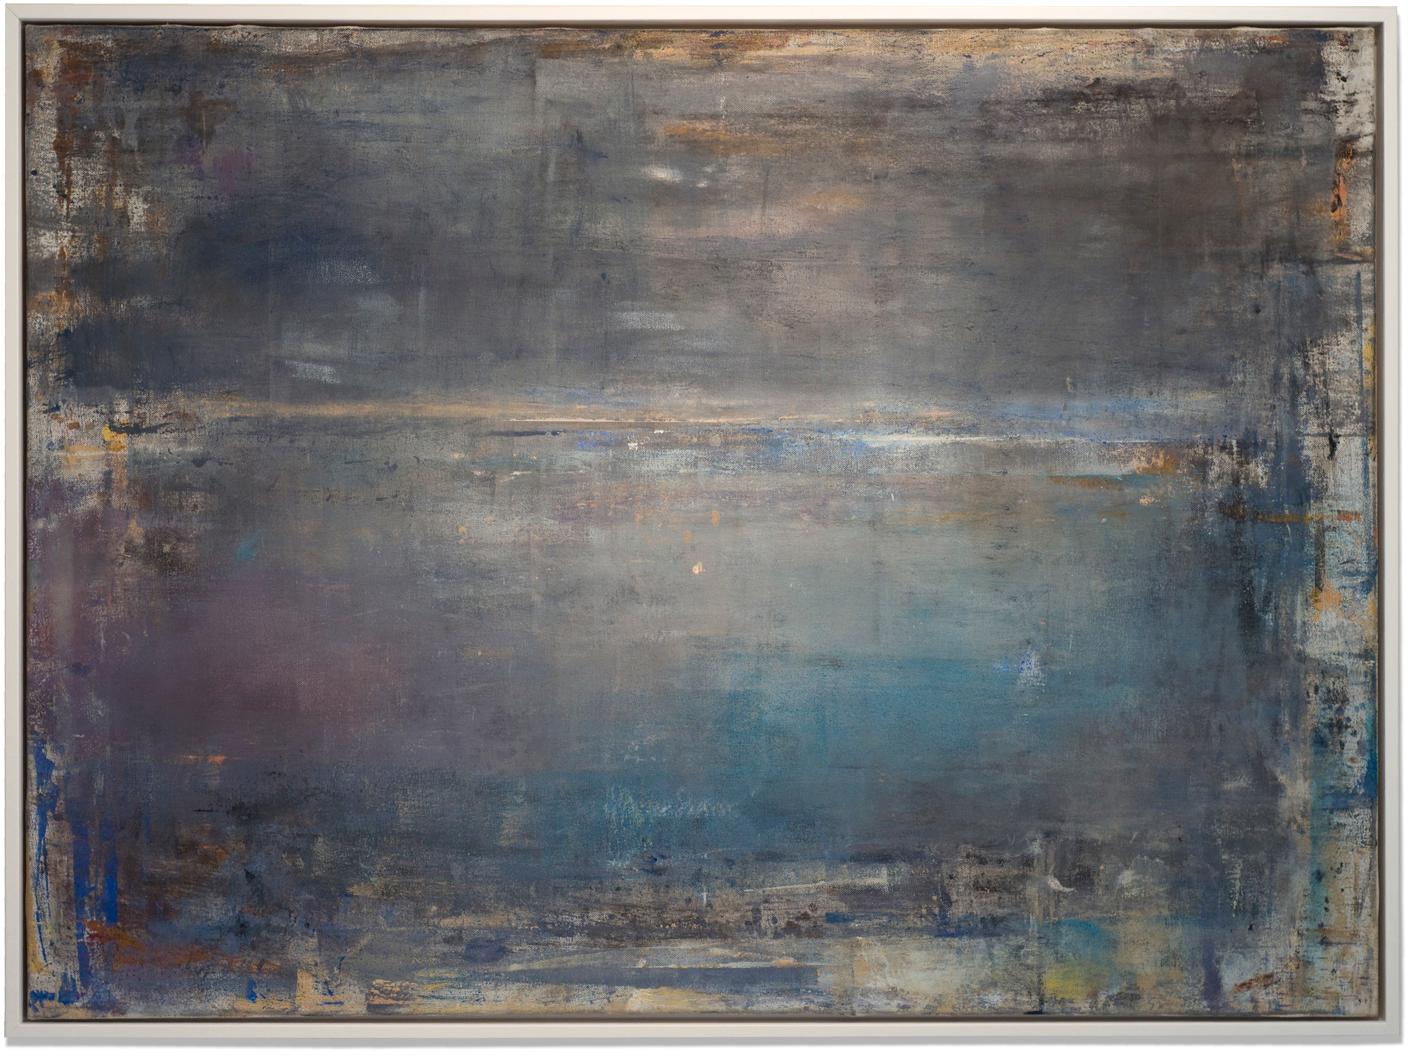 Gloria Saez, "La Luna Esta Saliendo" Oil on canvas seascape 